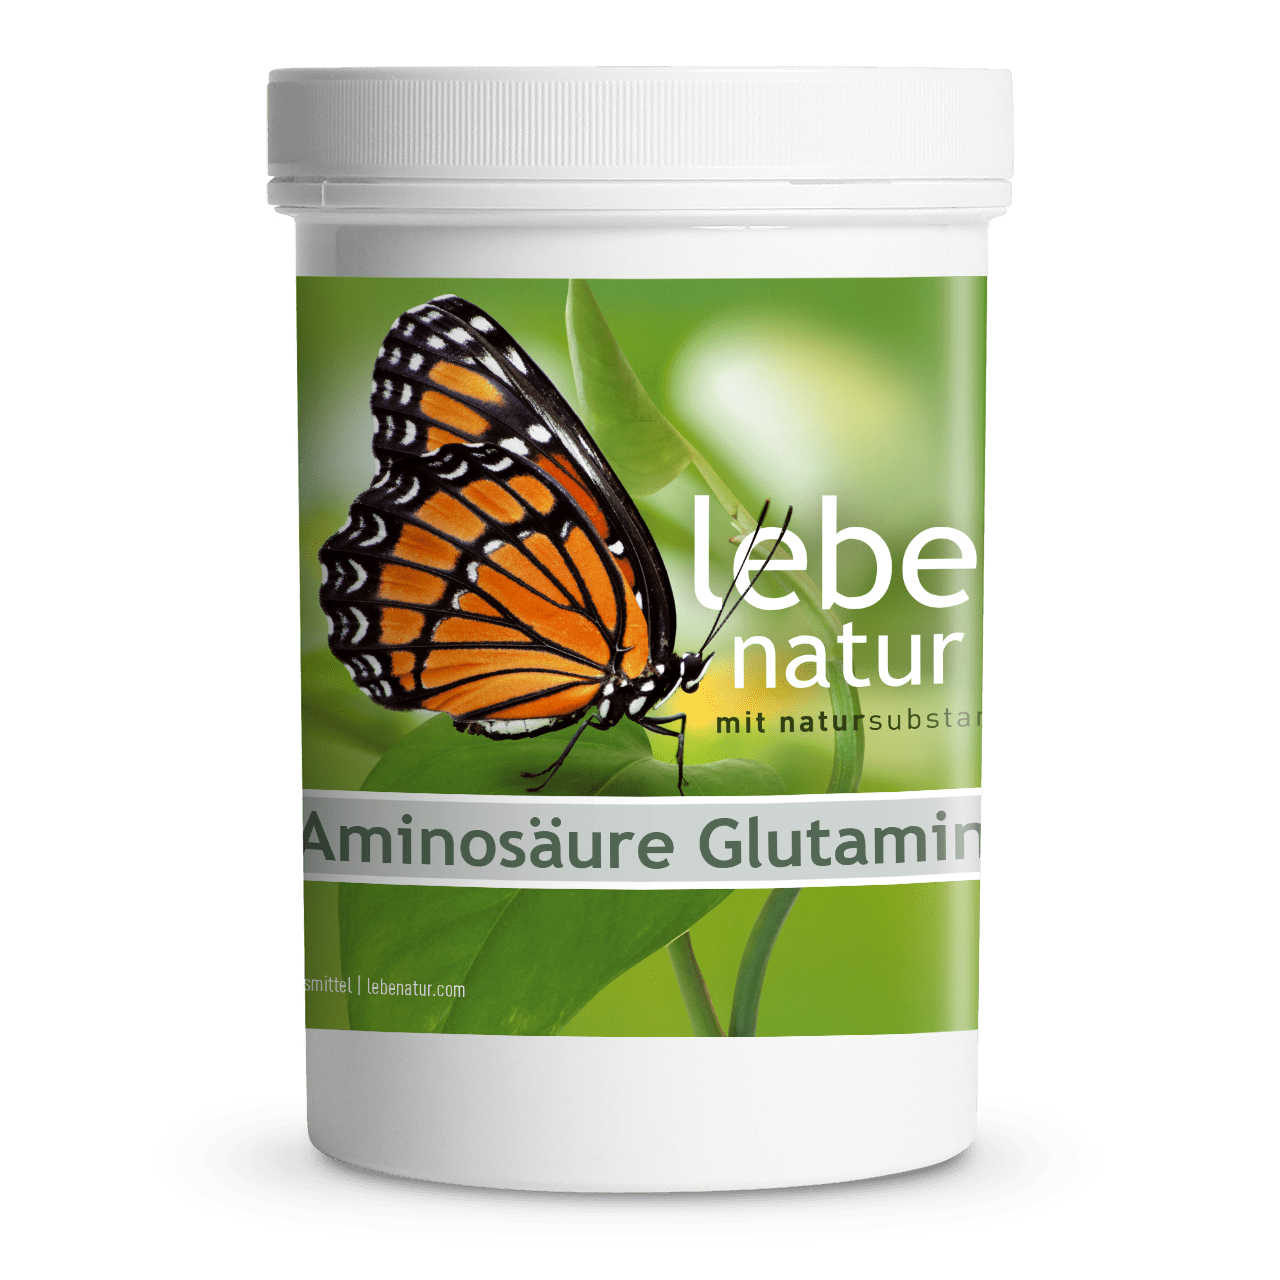 Aminosäure Glutamin – DOSE à 350 Gramm Pulver